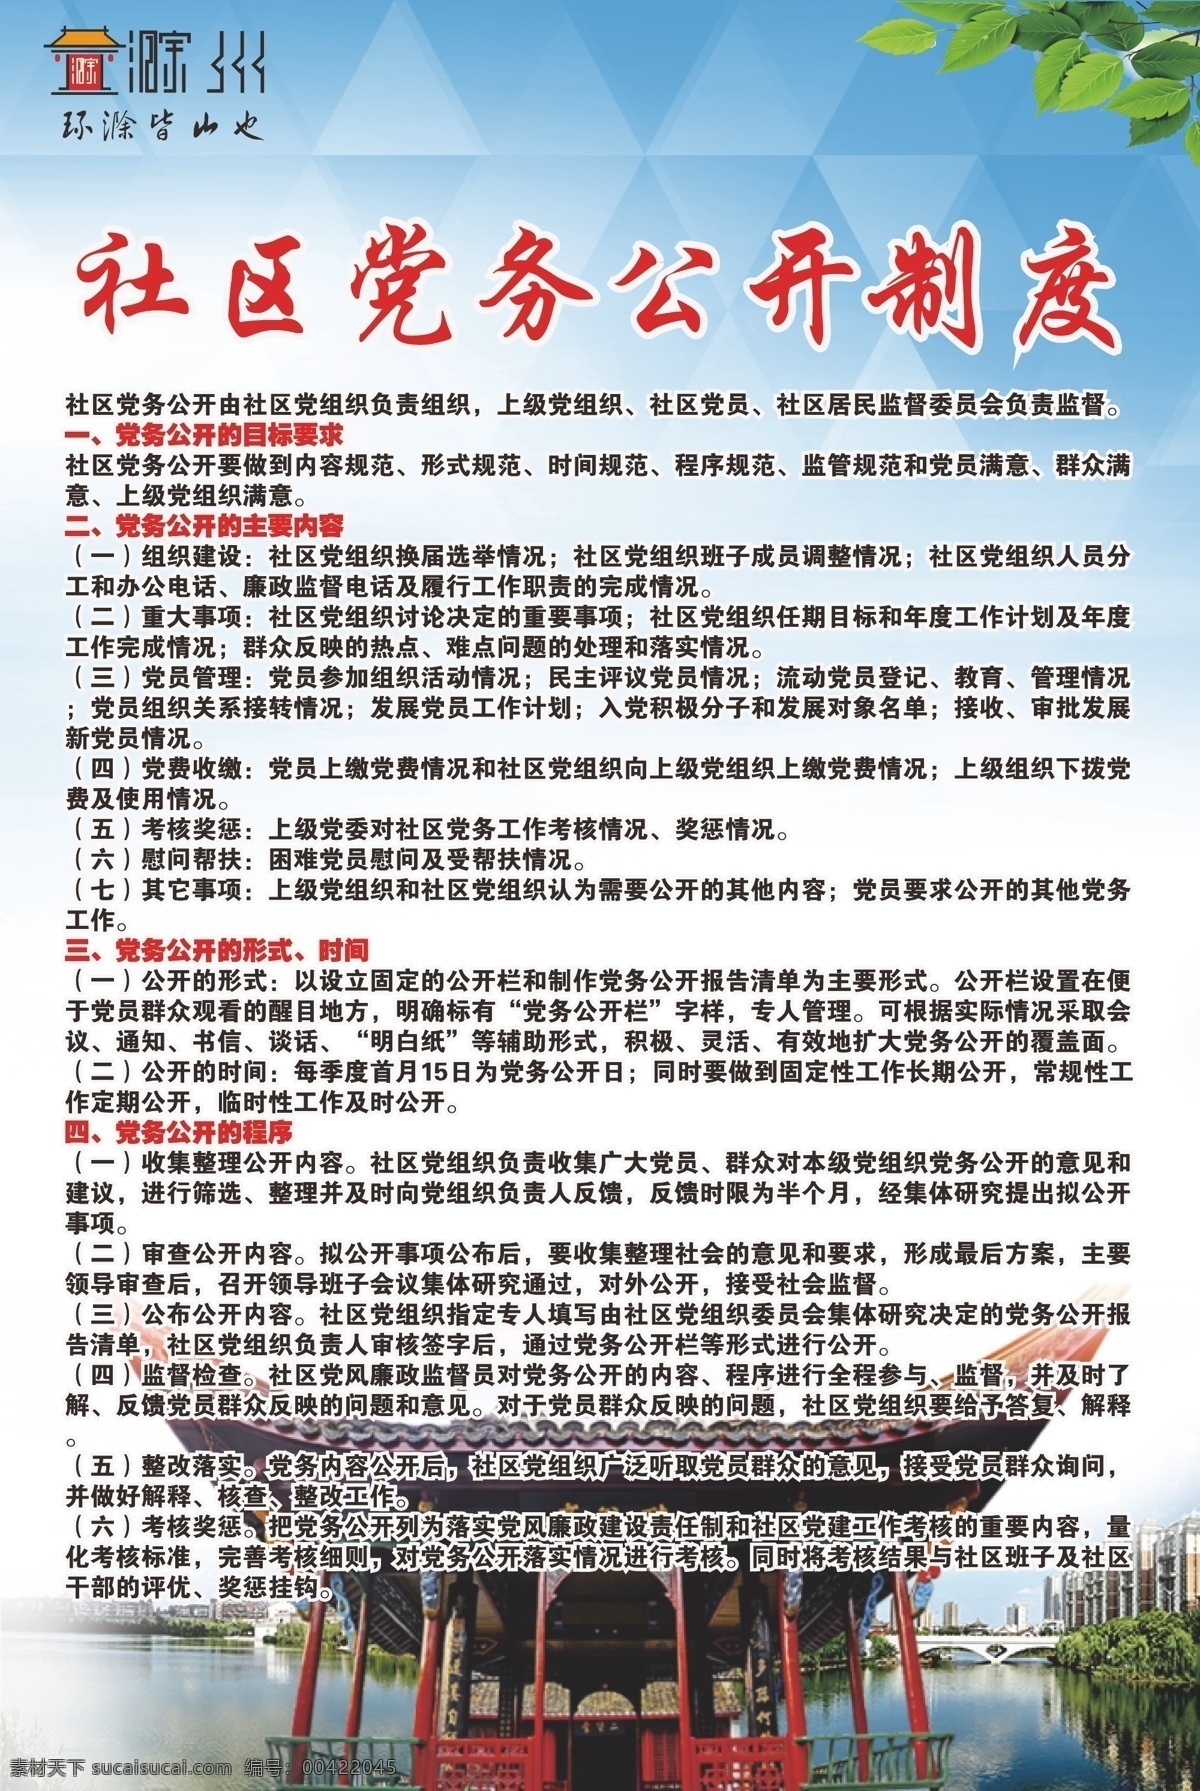 社区 党务 公开 制度 党务公开制度 滁州 海报 醉美滁州 中国滁州 中国亭城 滁州城市 广告宣传 城市